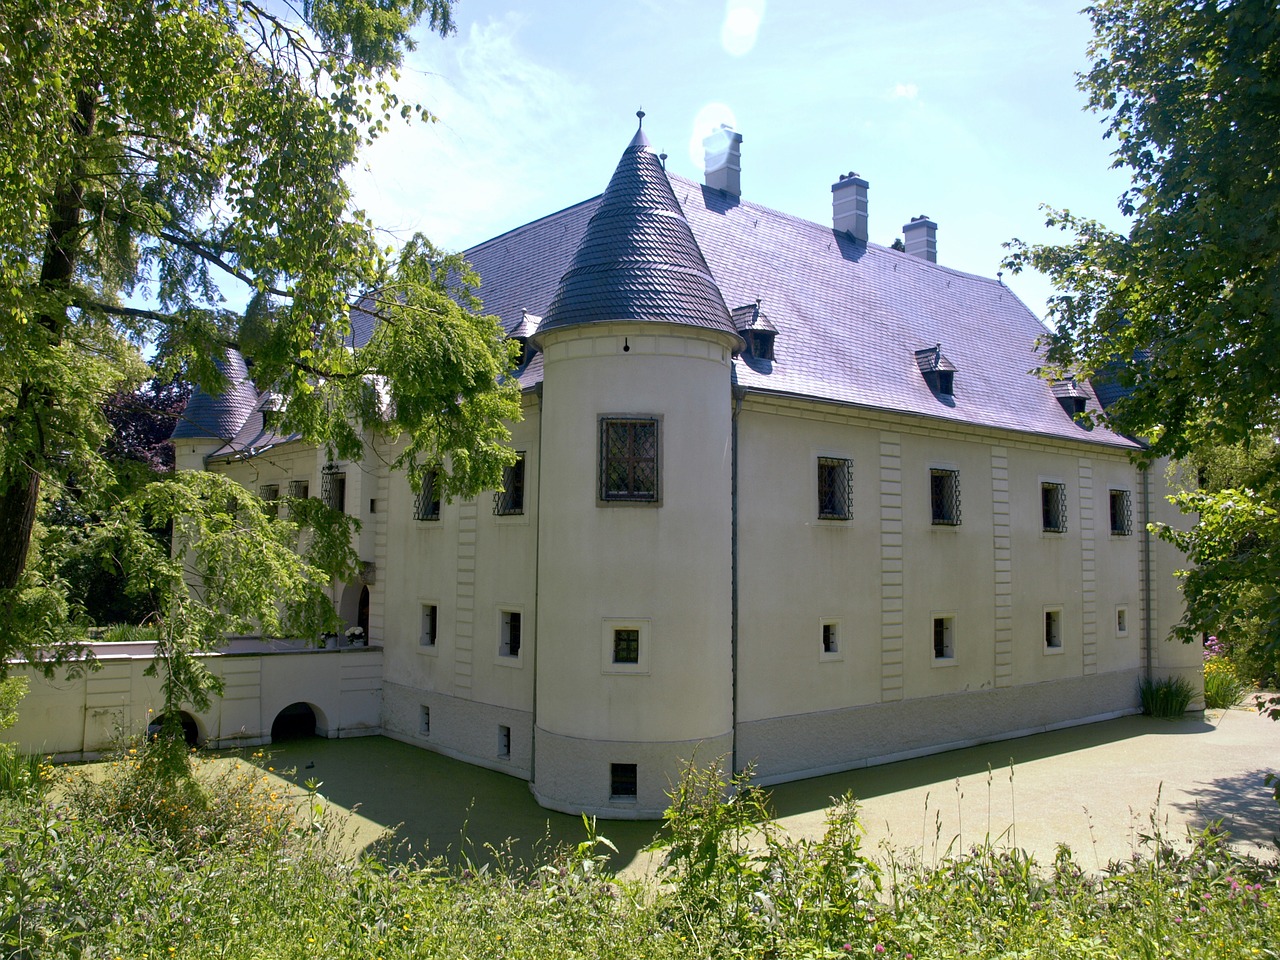 haidershofen moated castle palace free photo